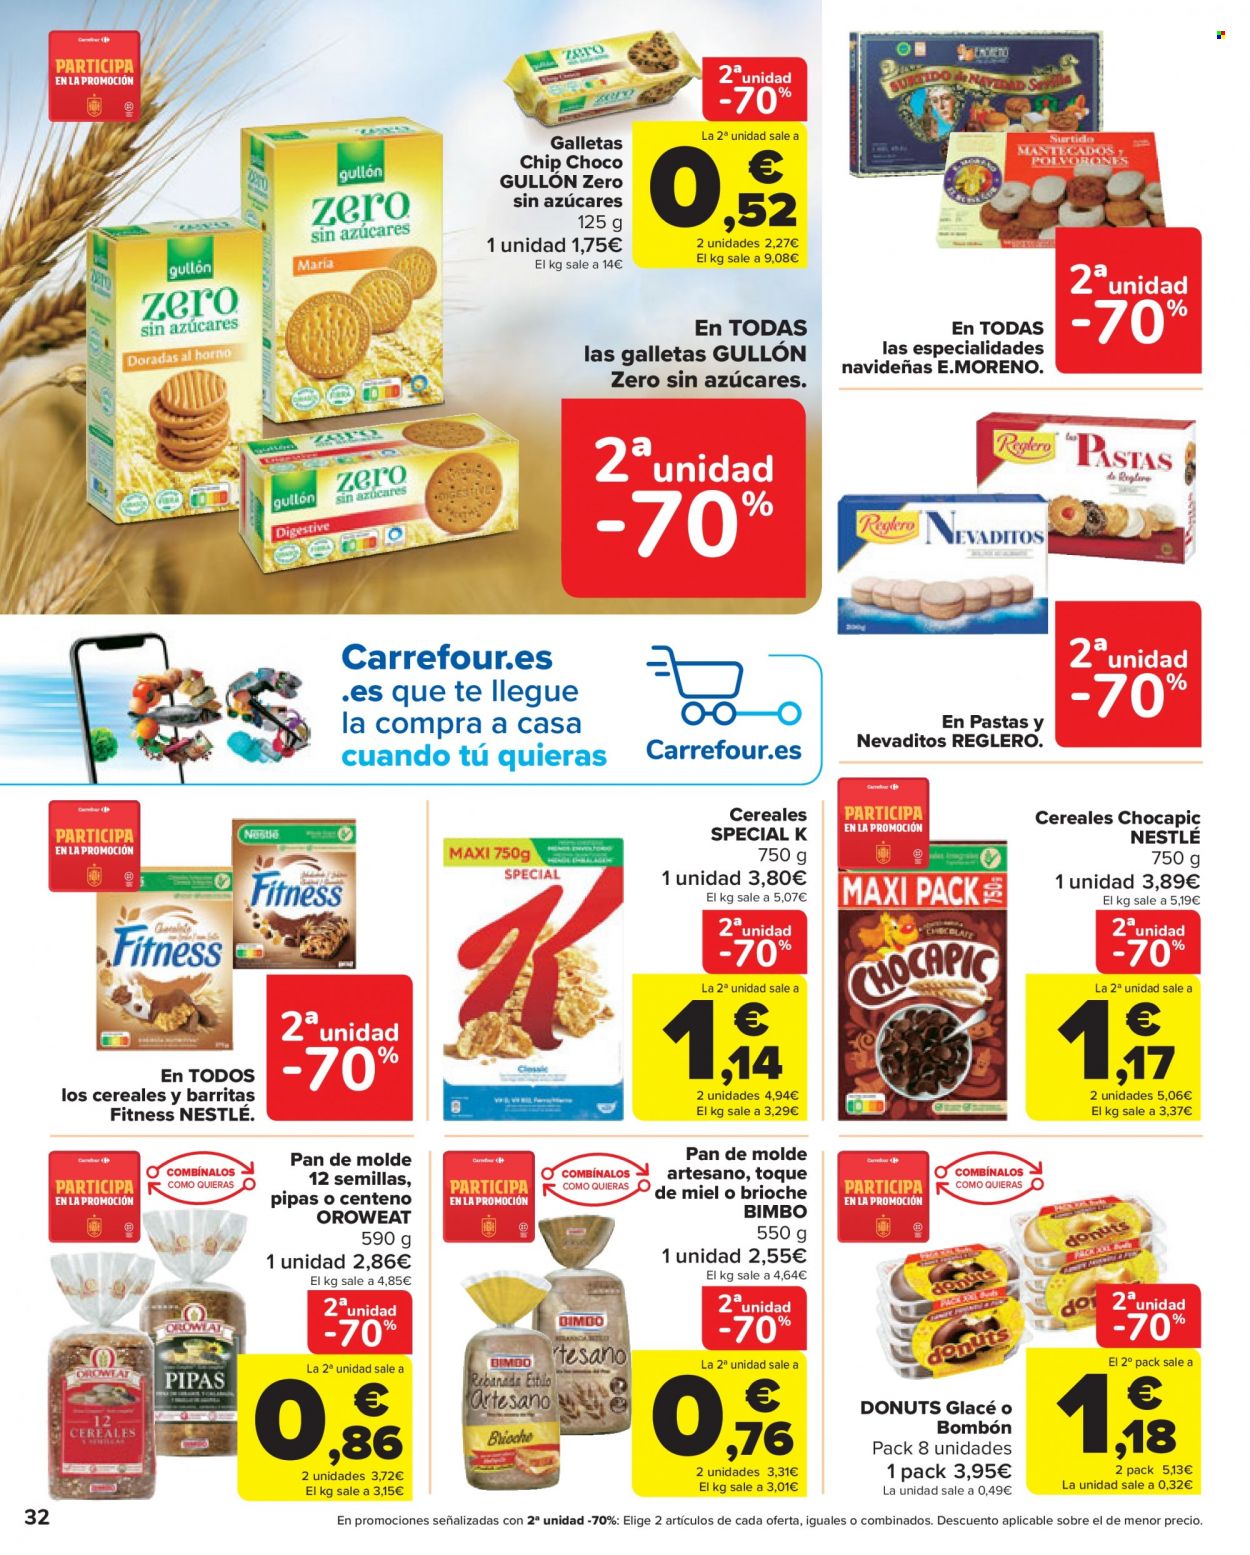 thumbnail - Folleto actual Carrefour - 02/12/22 - 14/12/22 - Ventas - galletas, Gullón, cereales, Chocapic, Nestlé, pan, pan de molde, donut, pastelería. Página 32.